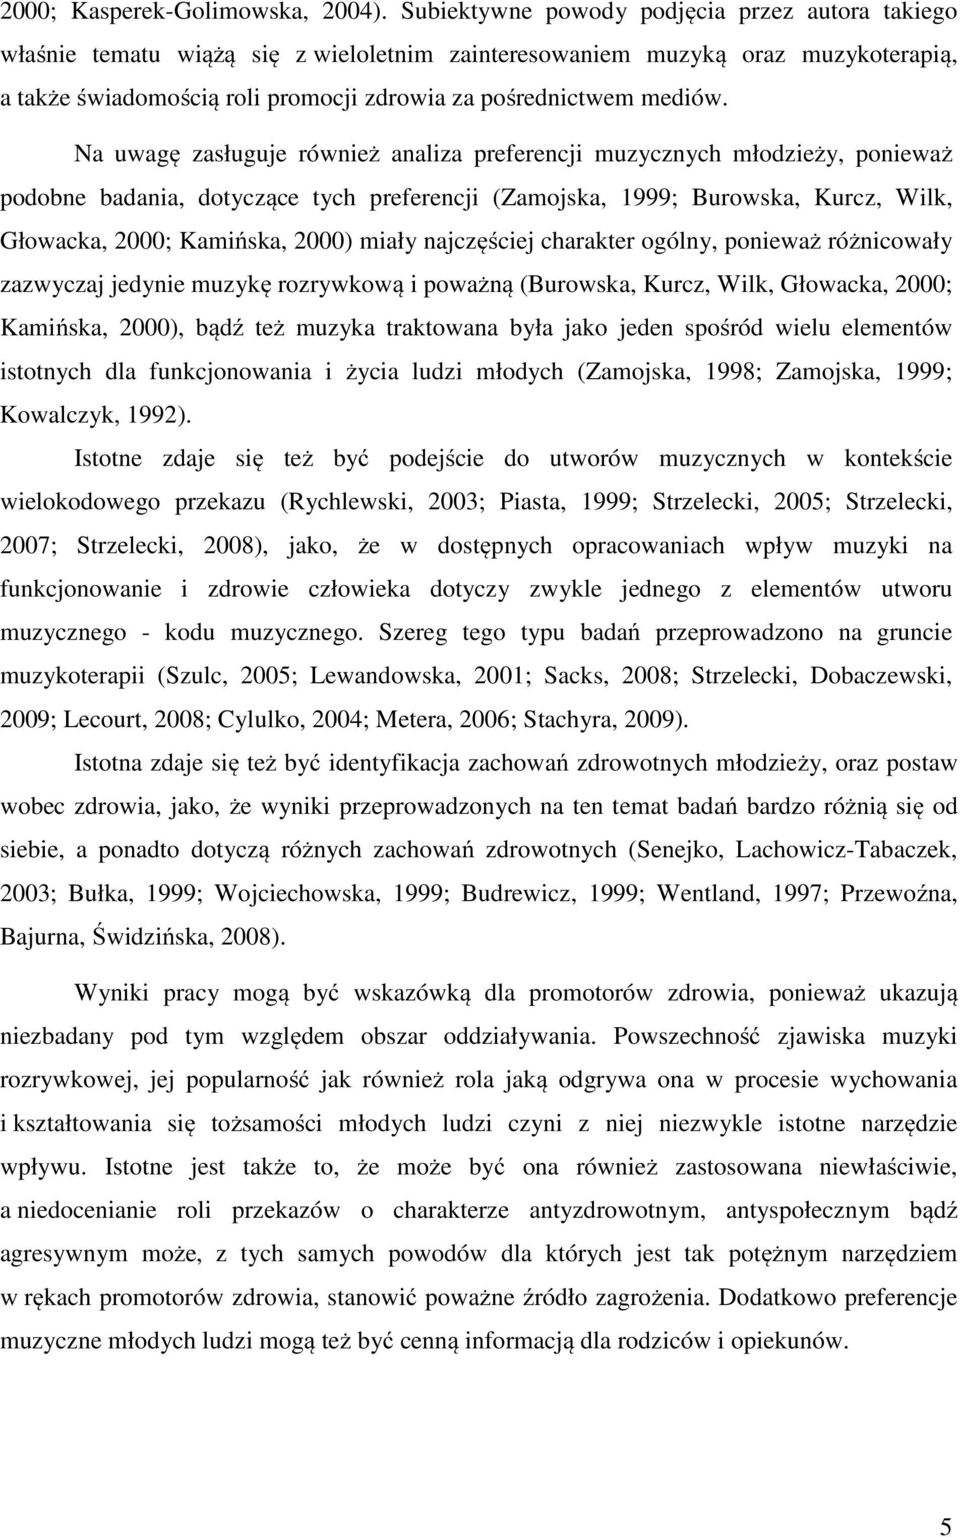 Na uwagę zasługuje również analiza preferencji muzycznych młodzieży, ponieważ podobne badania, dotyczące tych preferencji (Zamojska, 1999; Burowska, Kurcz, Wilk, Głowacka, 2000; Kamińska, 2000) miały